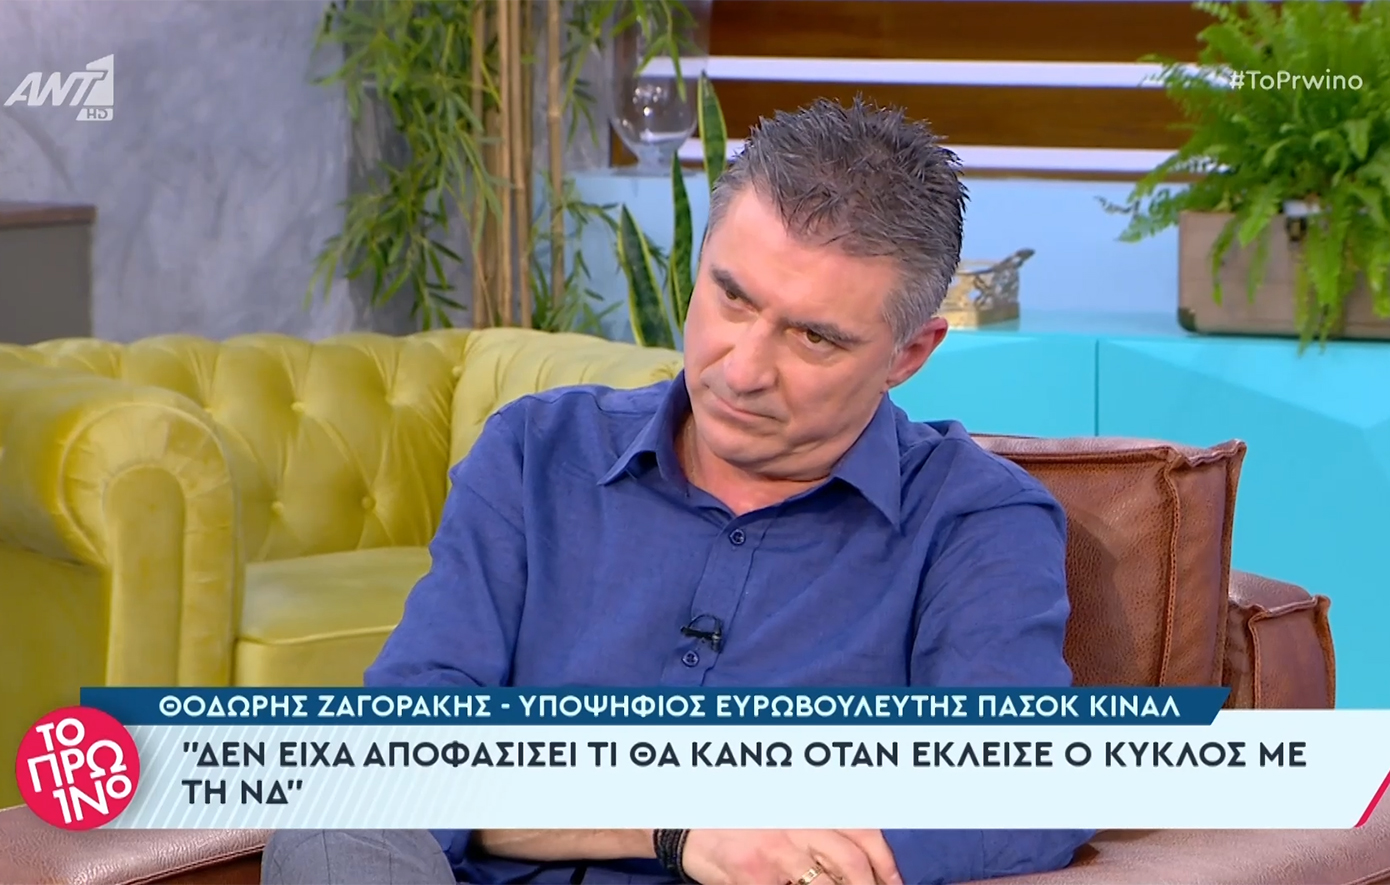 Ζαγοράκης: Δε νομίζω ότι έχω προδώσει κάποιον που πήγα στο ΠΑΣΟΚ – Ό,τι ήταν να κάνω το έκανα με τον πιο έντιμο τρόπο